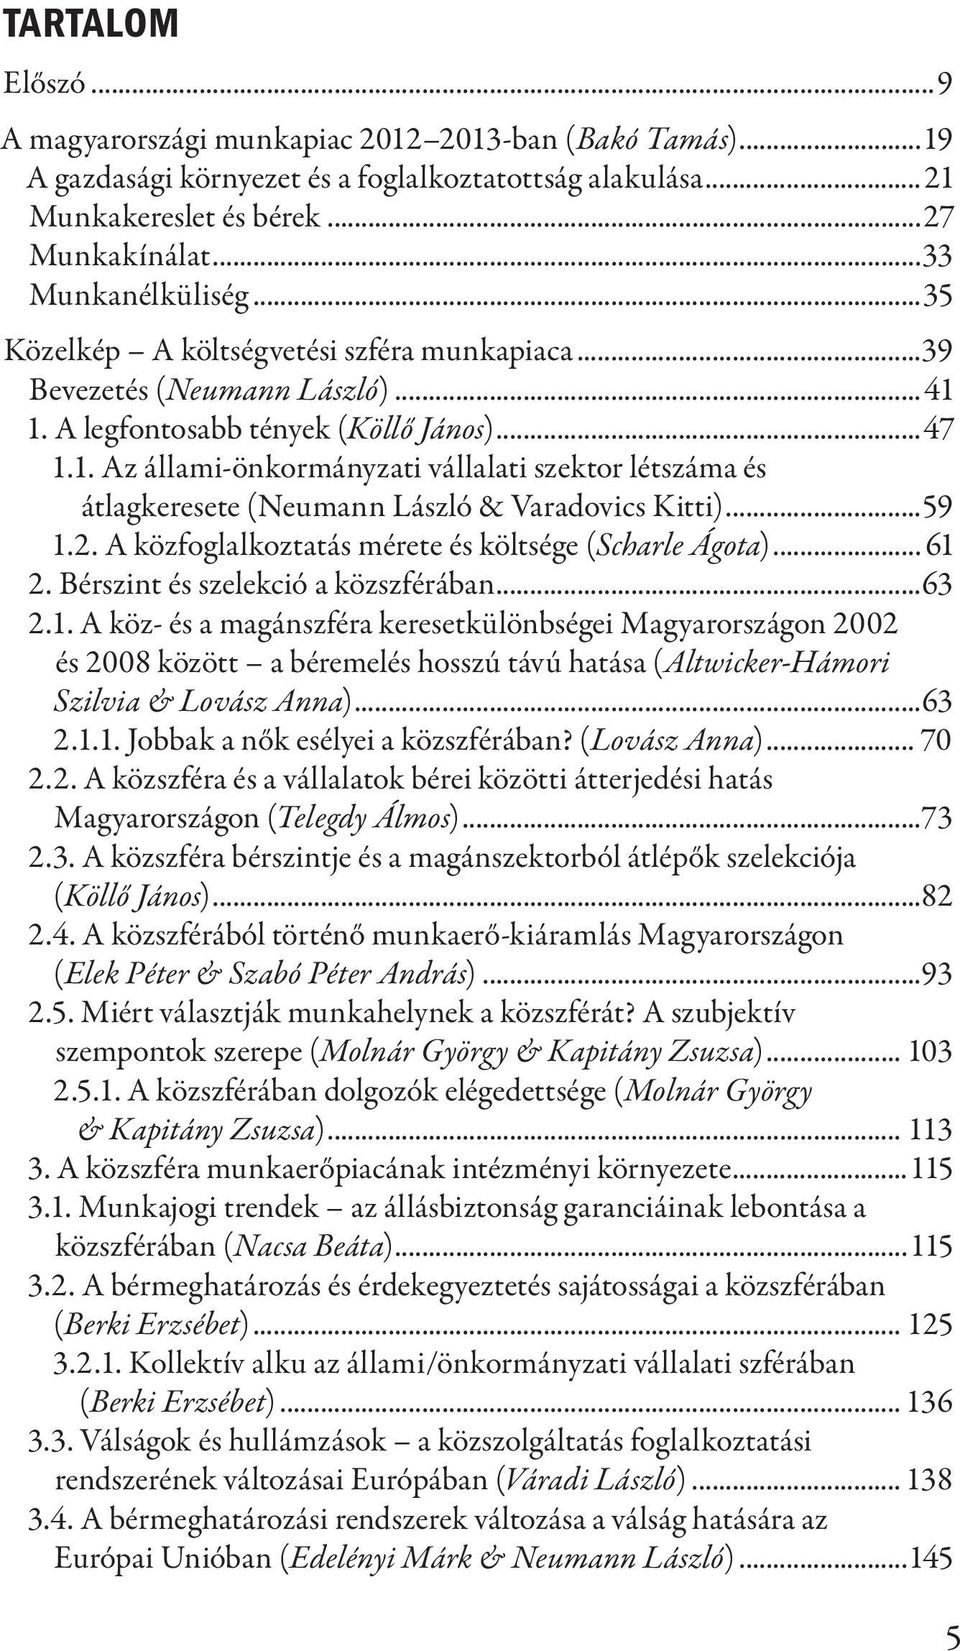 ..59 1.2. A közfoglalkoztatás mérete és költsége (Scharle Ágota)... 61 2. Bérszint és szelekció a közszférában...63 2.1. A köz- és a magánszféra keresetkülönbségei Magyarországon 2002 és 2008 között a béremelés hosszú távú hatása (Altwicker-Hámori Szilvia & Lovász Anna).